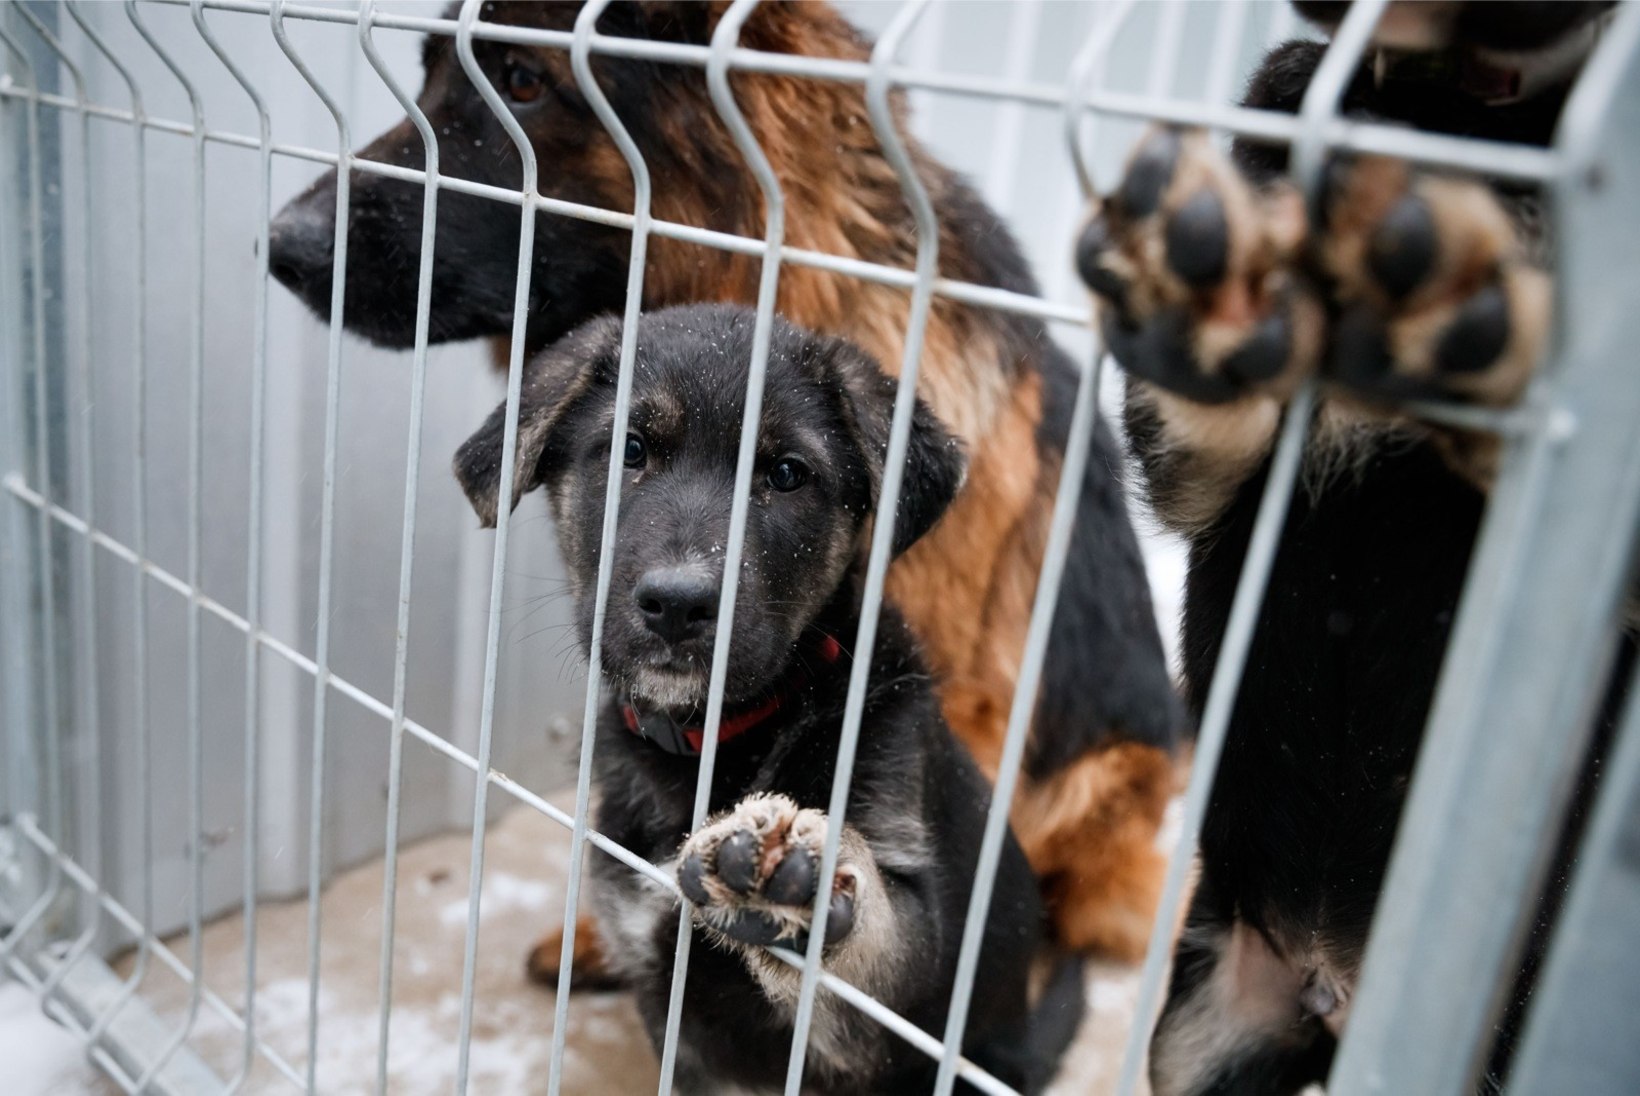 ÕL VIDEO JA FOTOD | Kuidas algas aasta loomade varjupaigas?